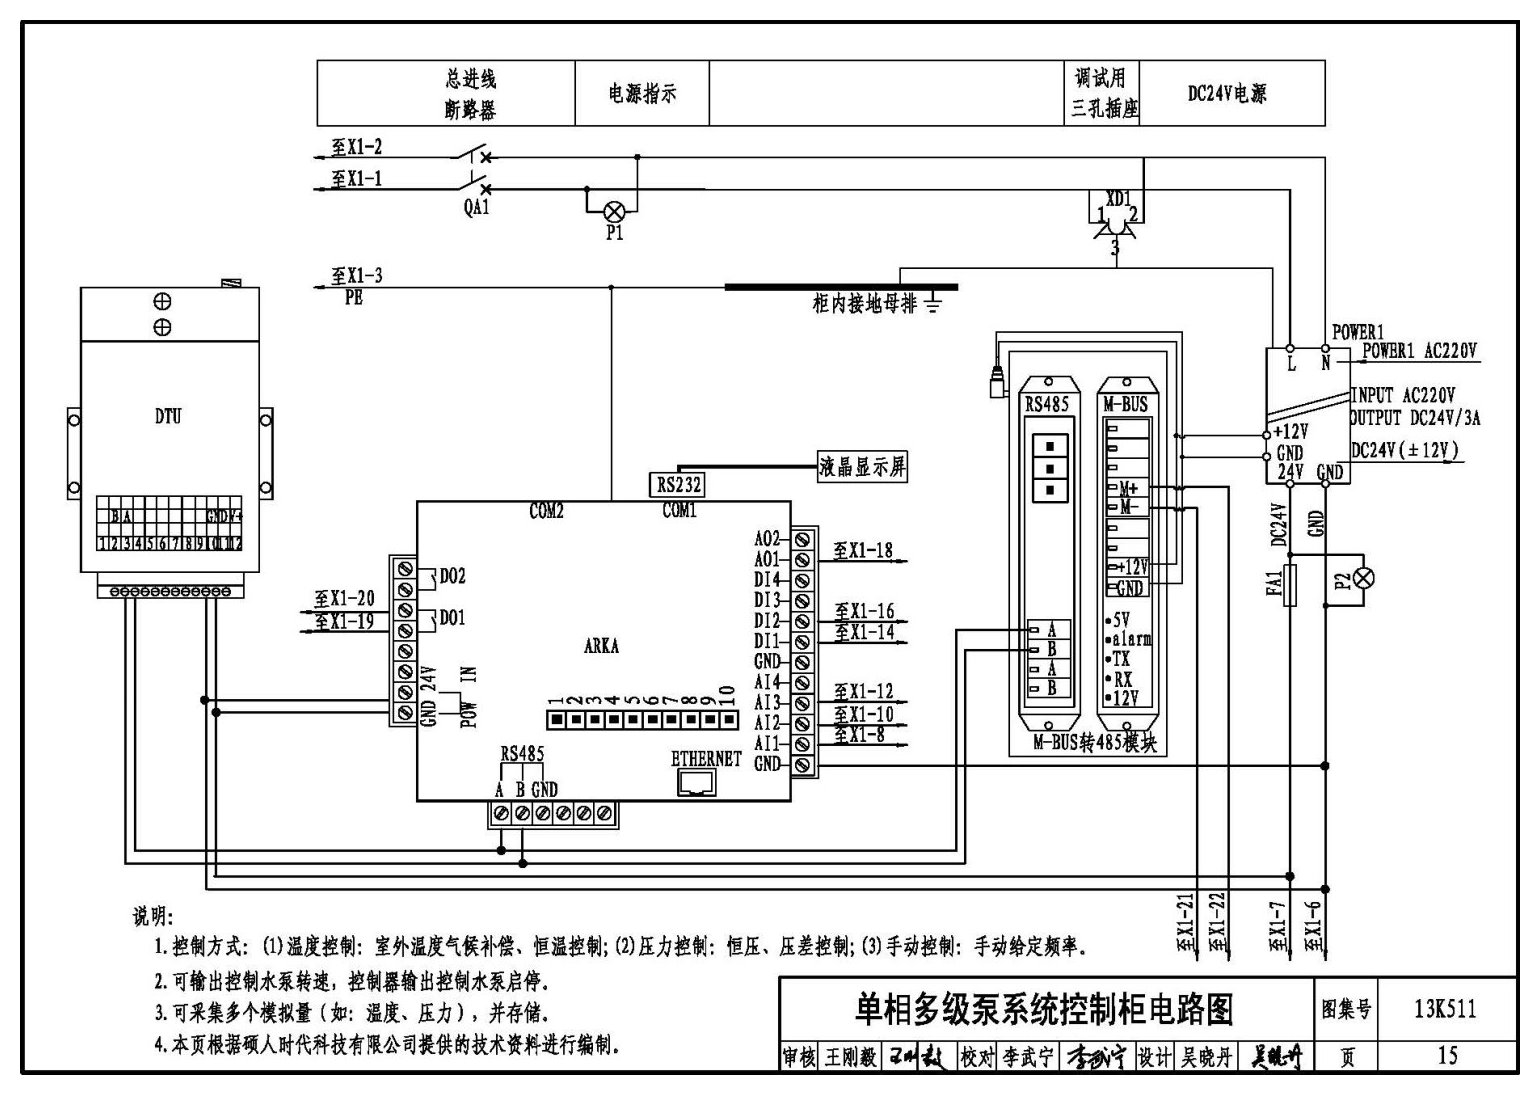 13K511:分布式冷热输配系统用户装置设计与安